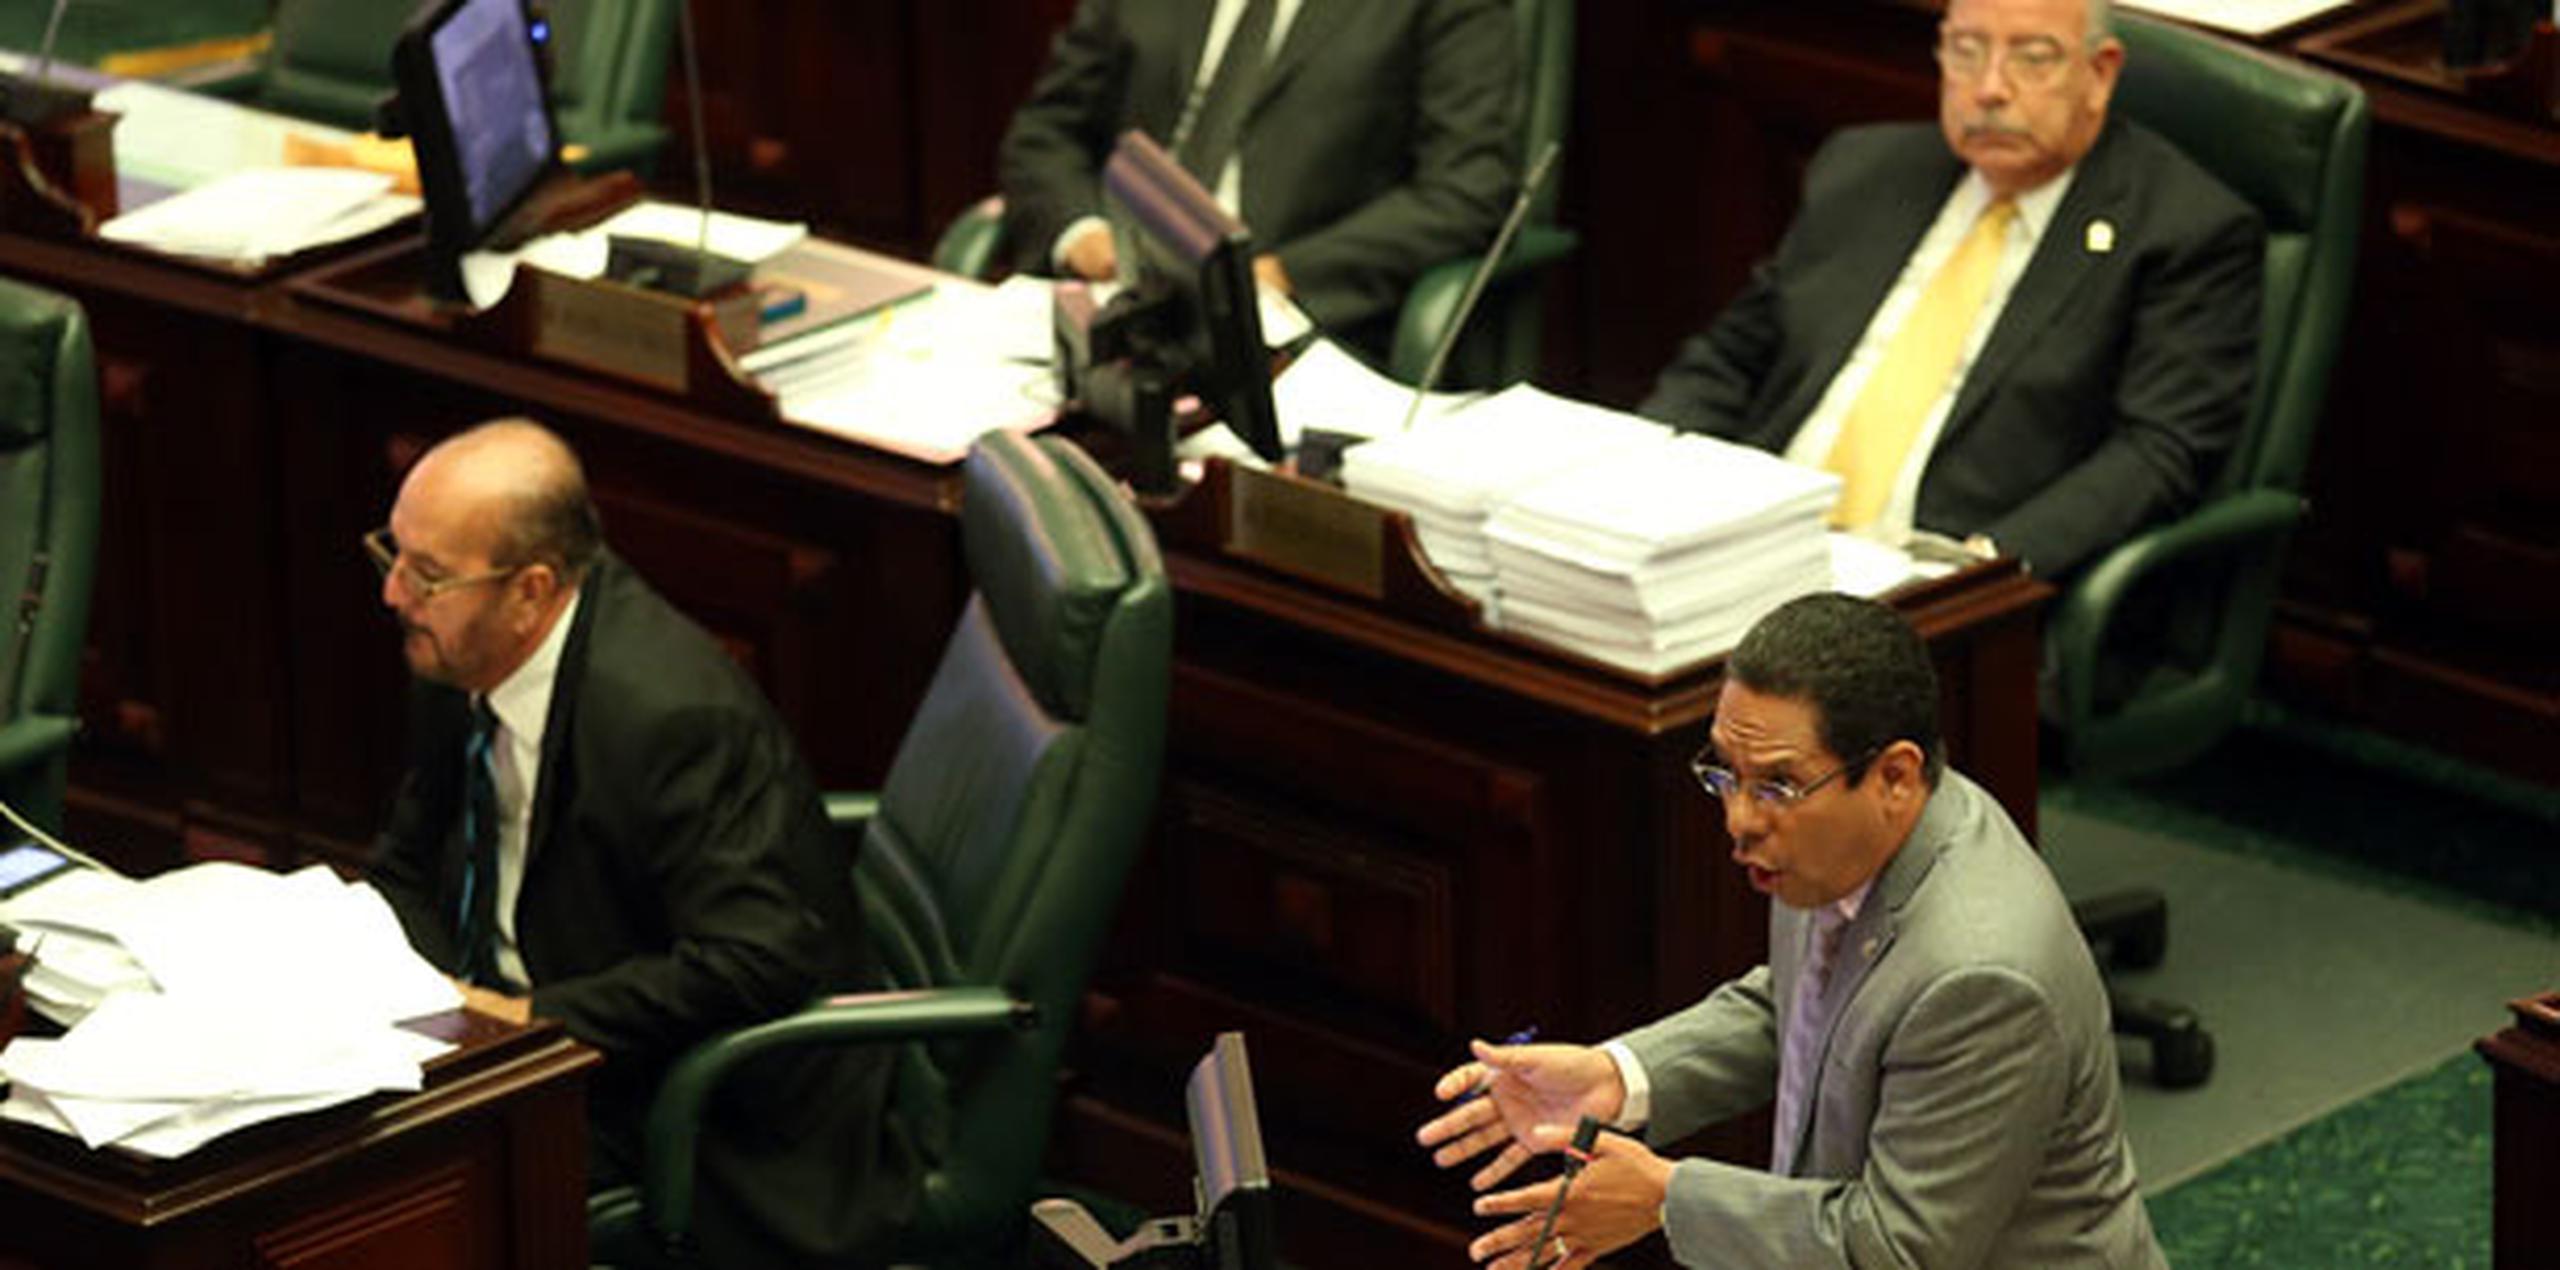 Se recortaron  algunas partidas del presupuesto, pero no de manera significativa según reconoció la propia portavoz el Partido Nuevo Progresista en la Cámara, Jenniffer González. (juan.martinez@gfrmedia.com)